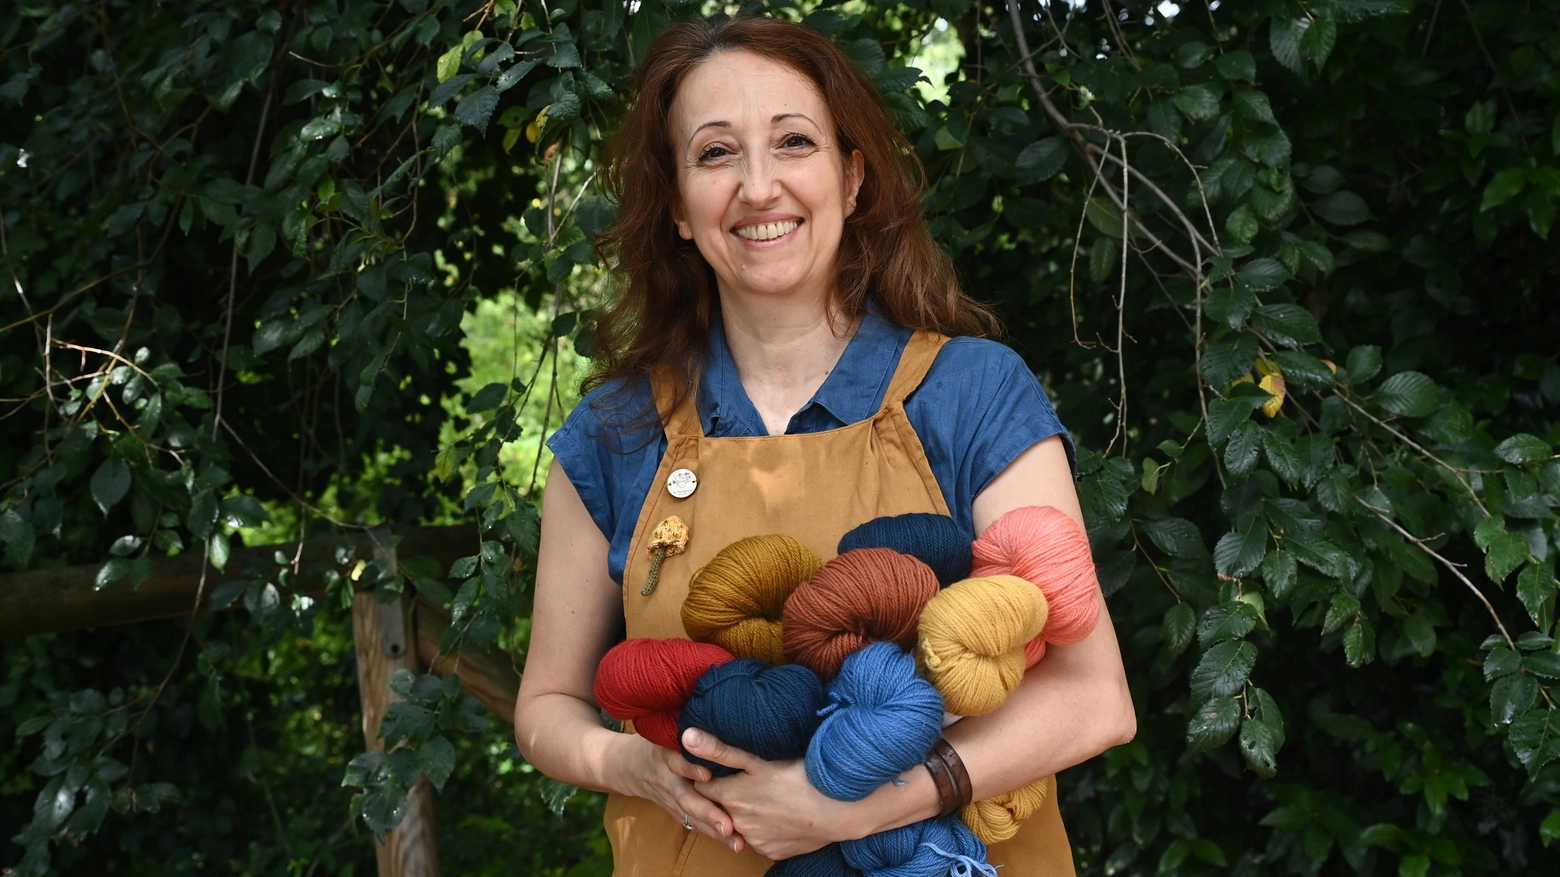 Una passione anche al centro del festival del knitting